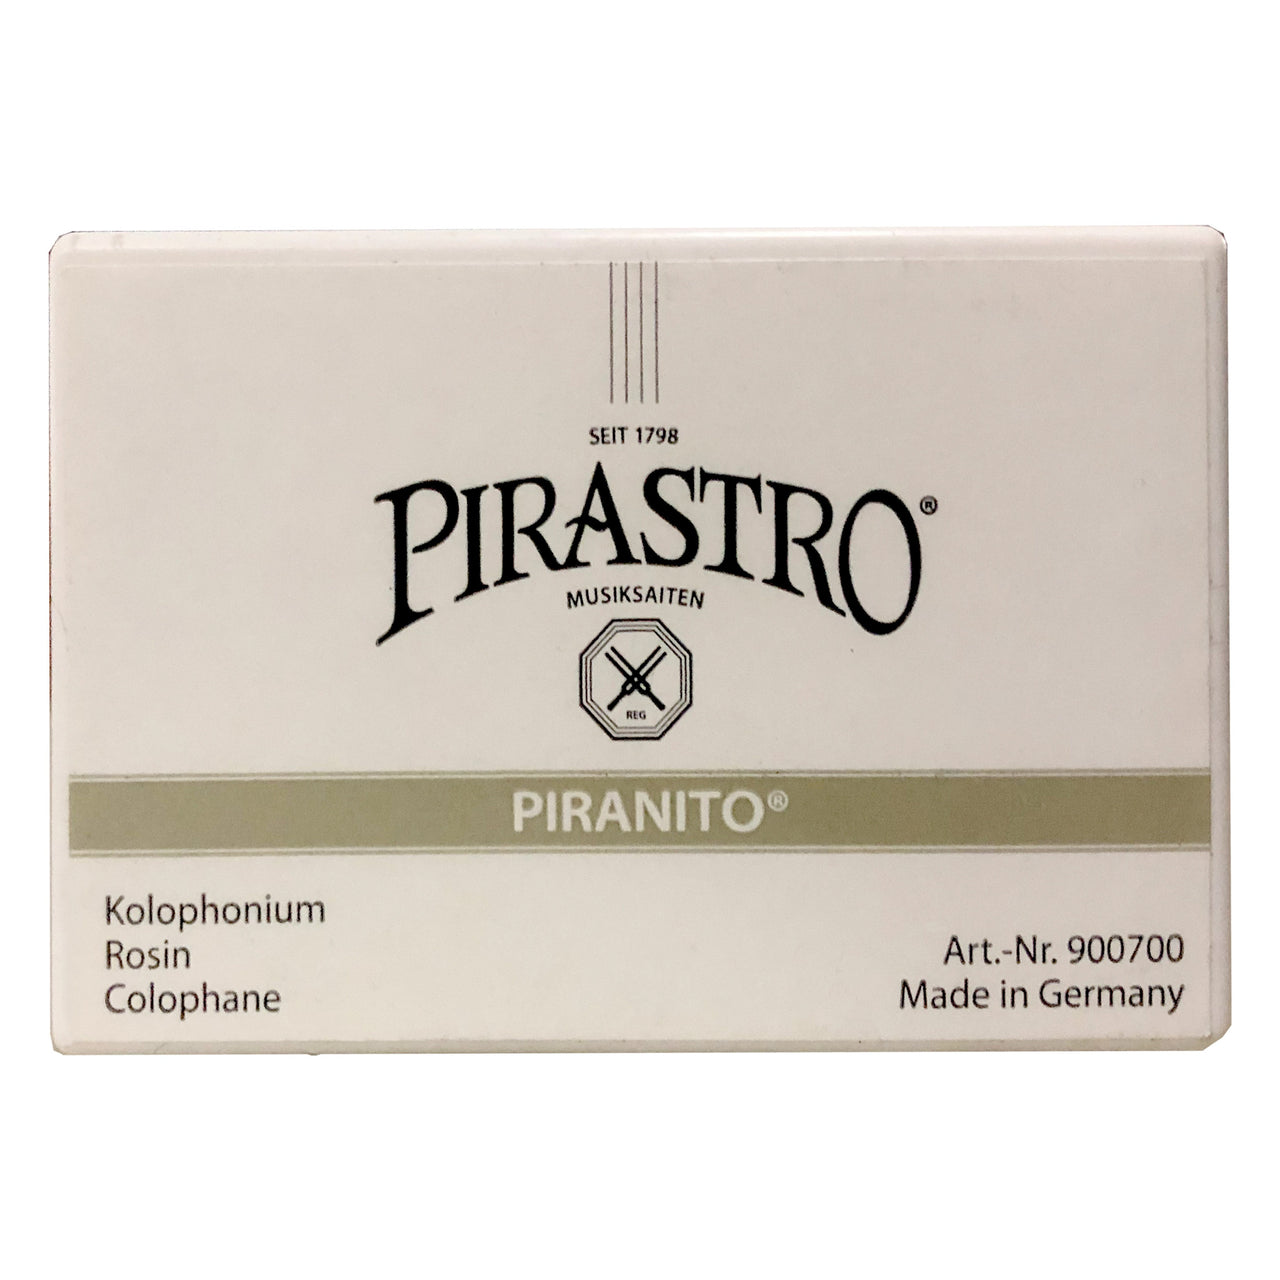 Brea Violin Pirastro Piranito, 9007